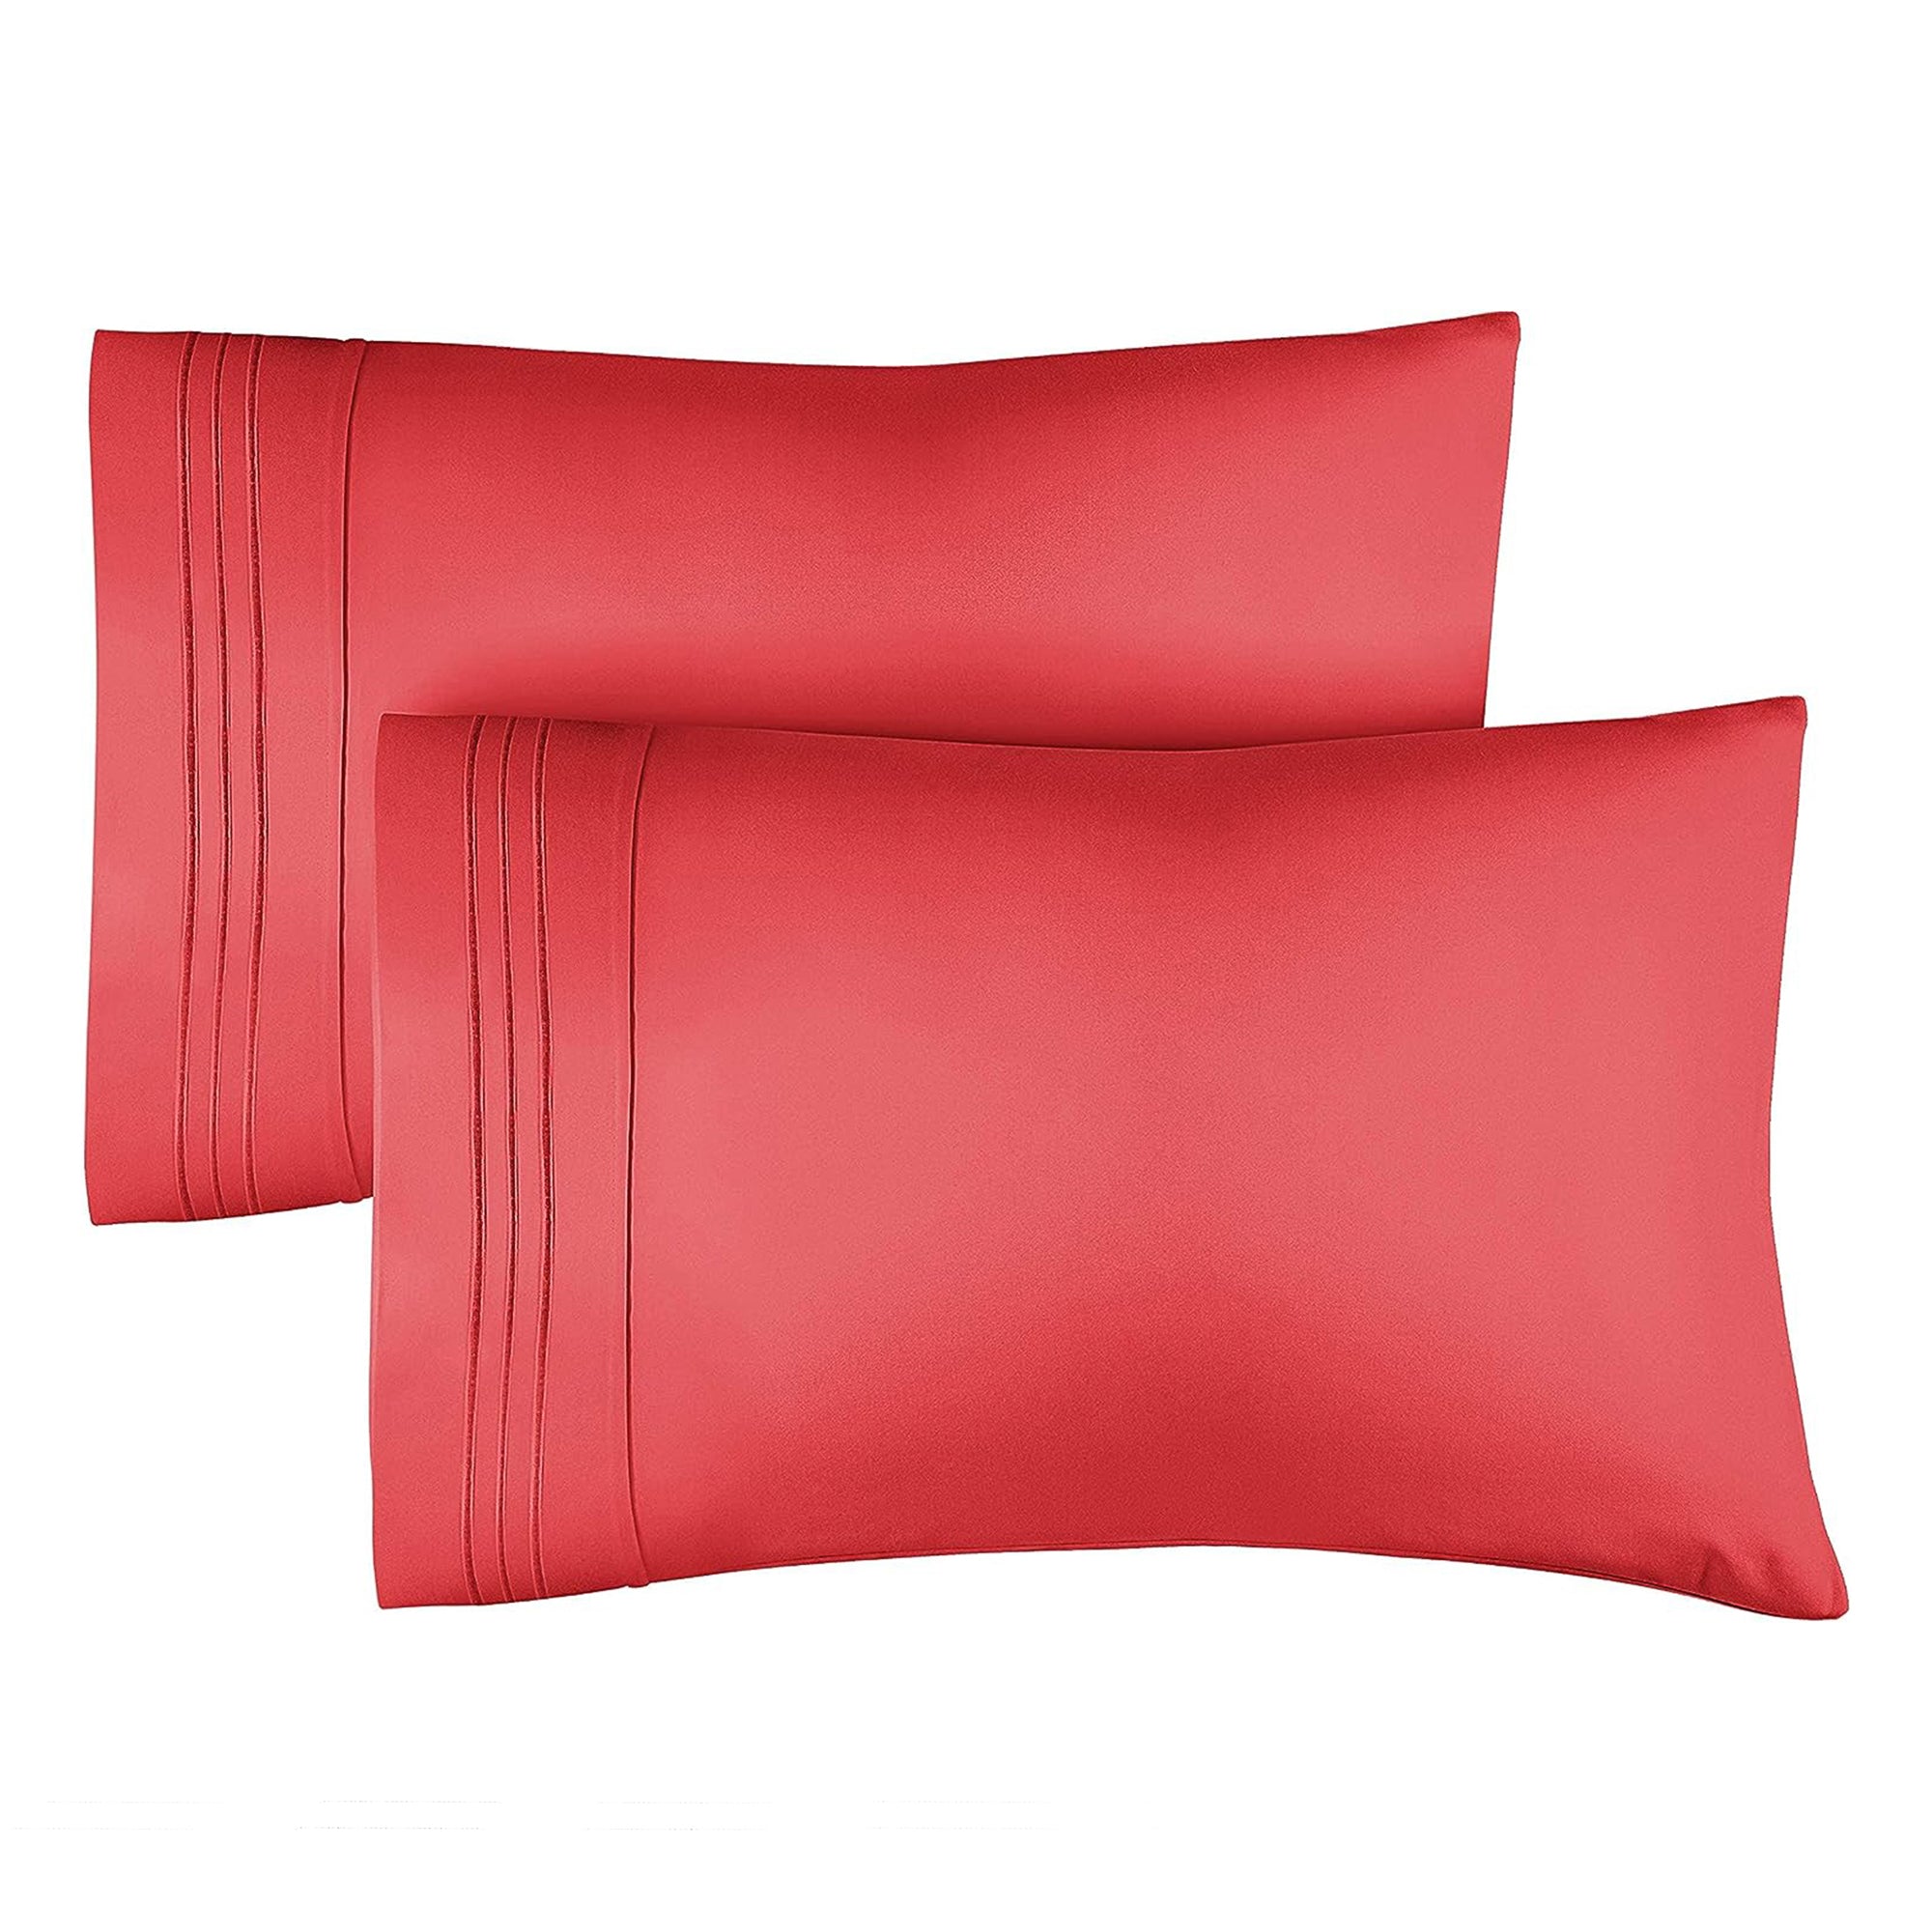 tes 2 Pillowcase Set - Red